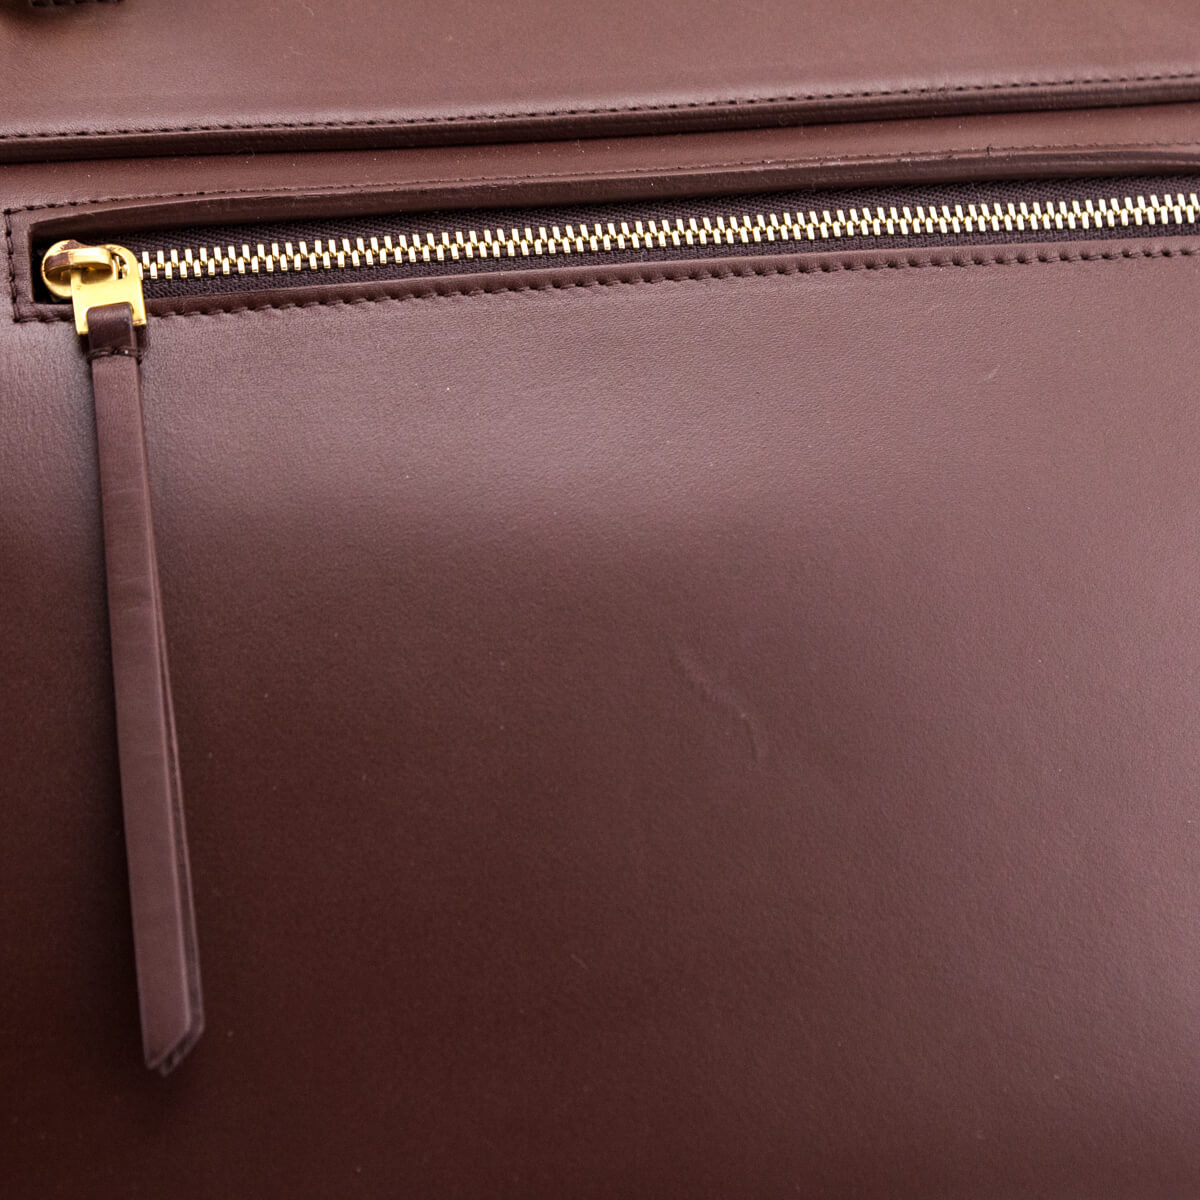 CELINE Belt Bag / Burgundy Smooth and Grained Leather Mini Belt Bag